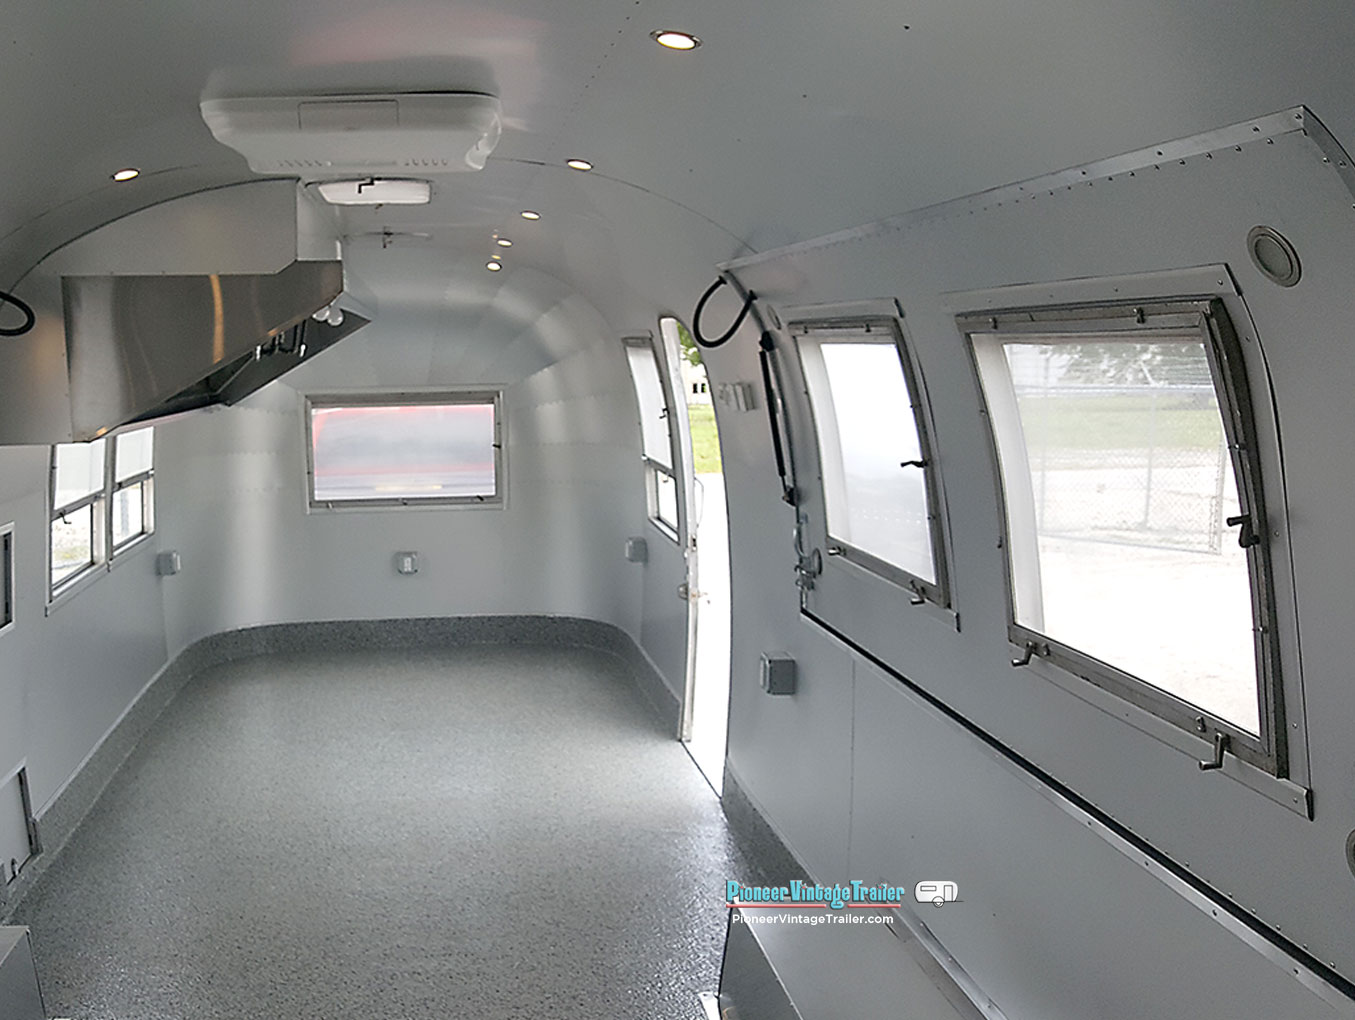 Airstream interior wrapped in aluminum